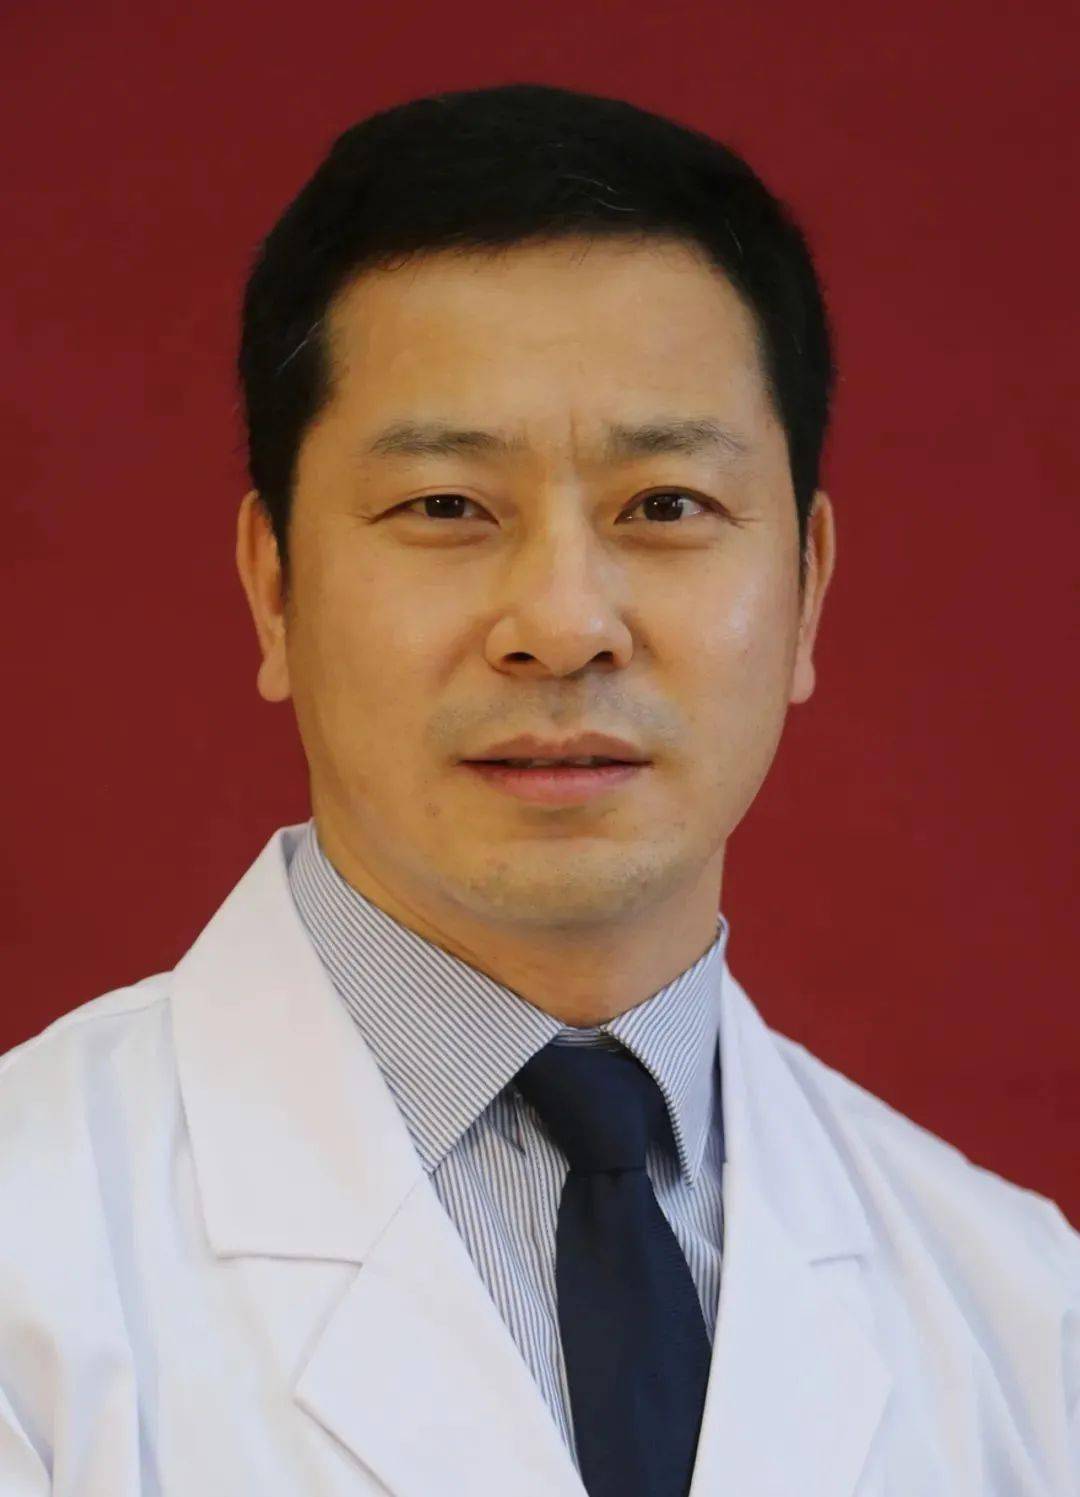 北京博爱医院神经外科副主任医师, 医学硕士 1985年毕业于承德医学院